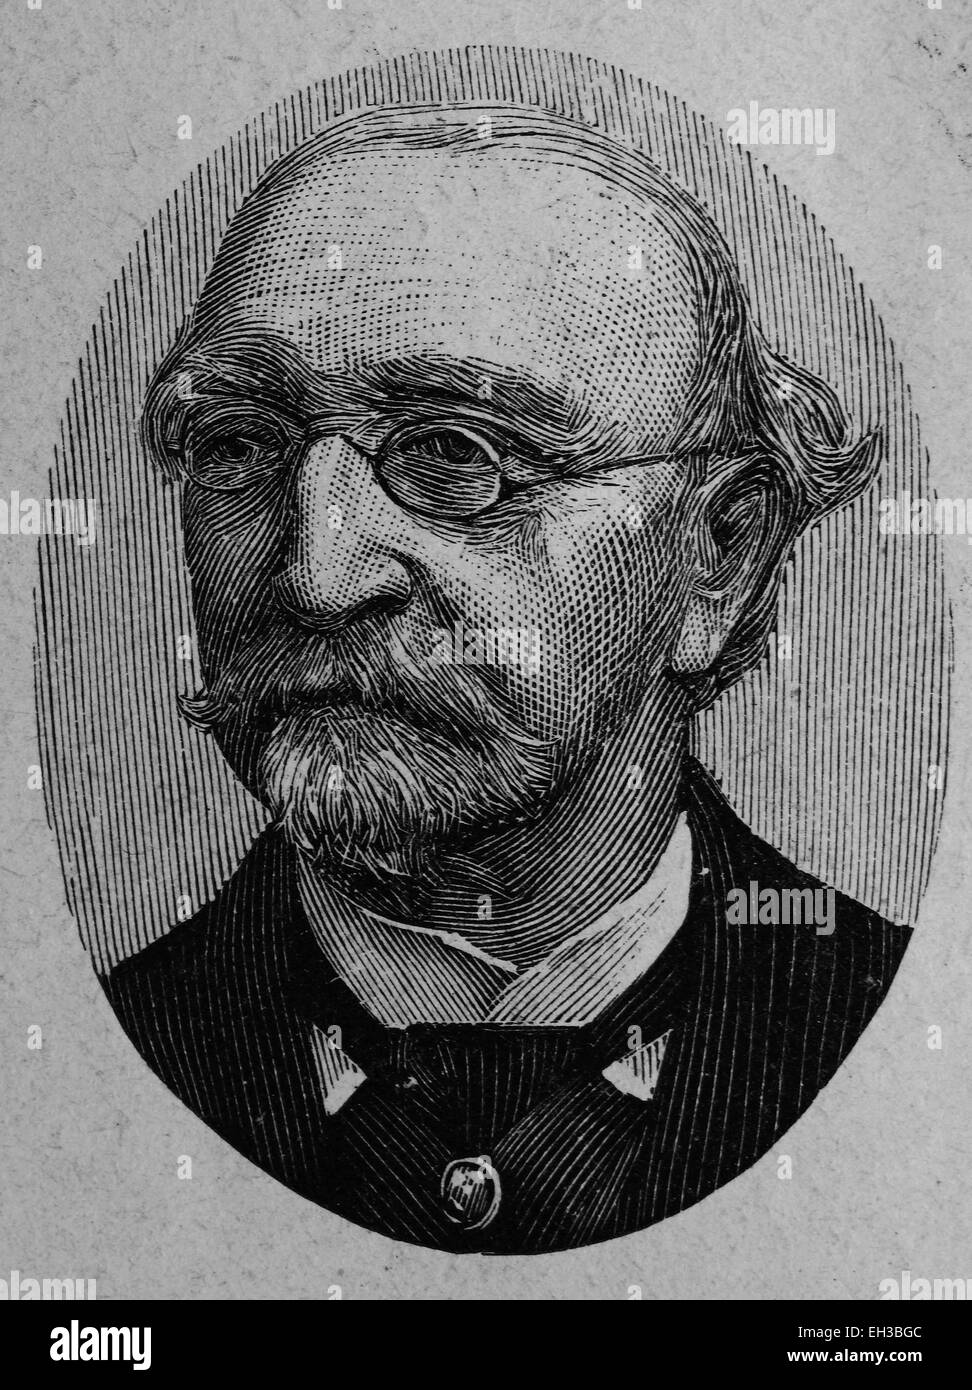 Carl Philipp Theodor Müller, 1818 - 1900, un avocat et homme politique allemand, gravure sur bois, vers 1880 Banque D'Images